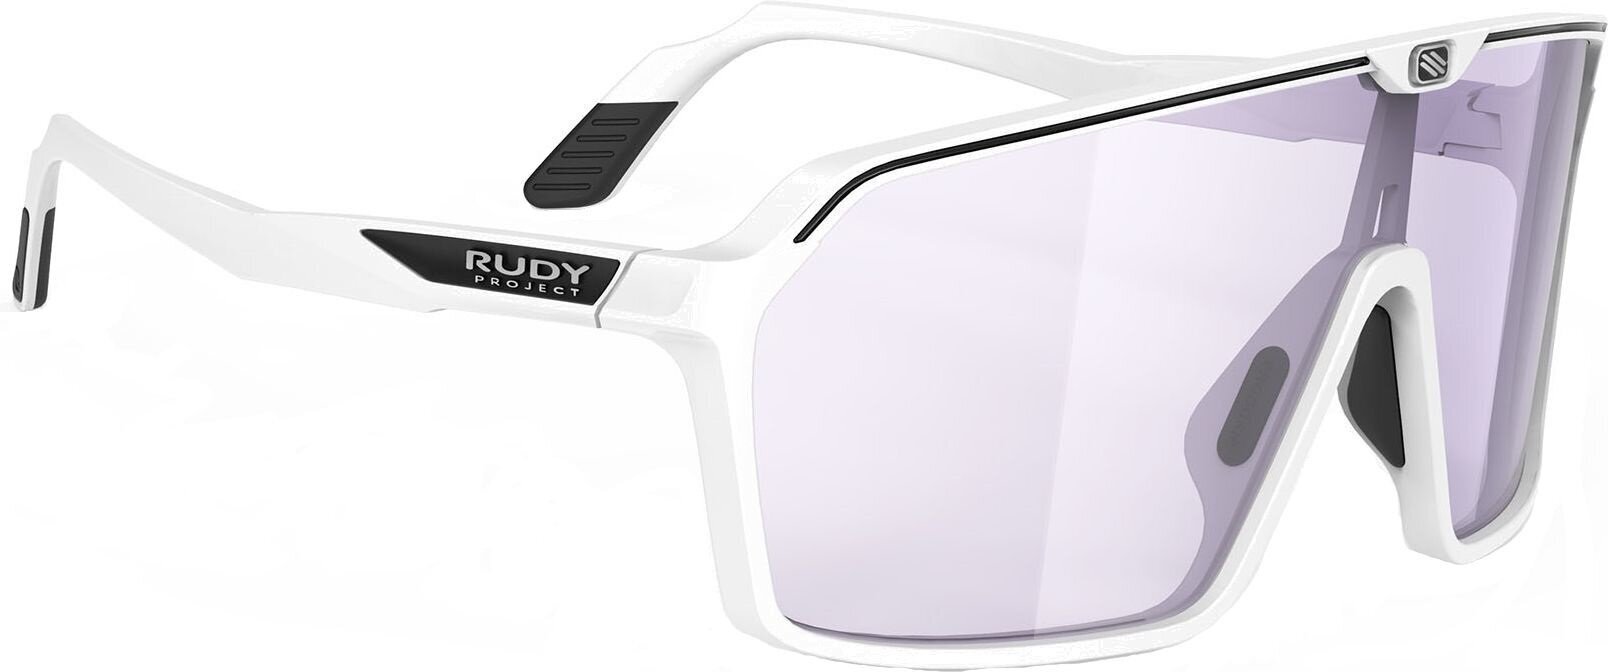 Lifestyle okulary Rudy Project Spinshield Lifestyle okulary